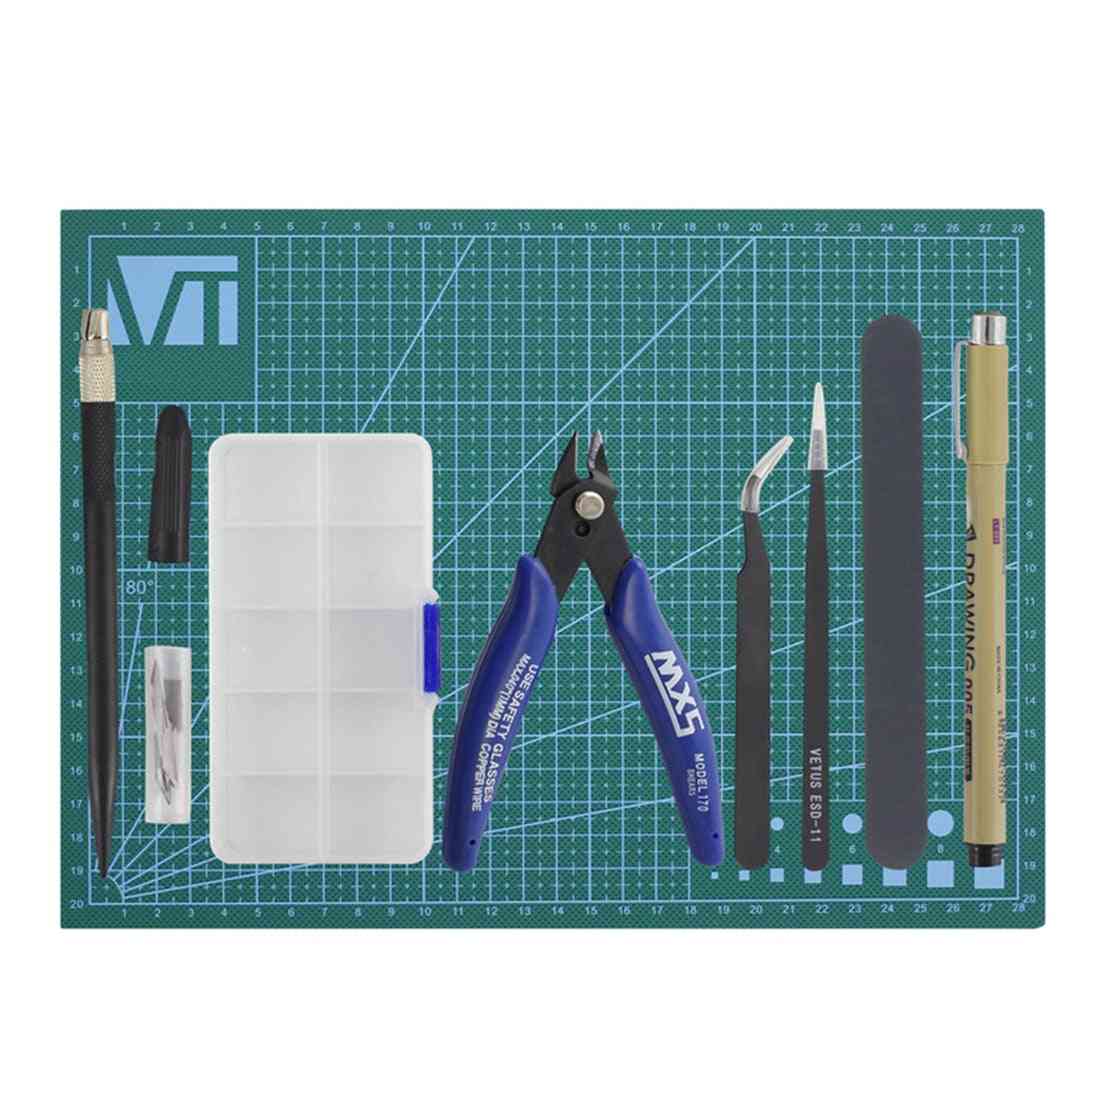 Kit de ferramentas, modelador básico, conjunto de artesanato, kit de construção -